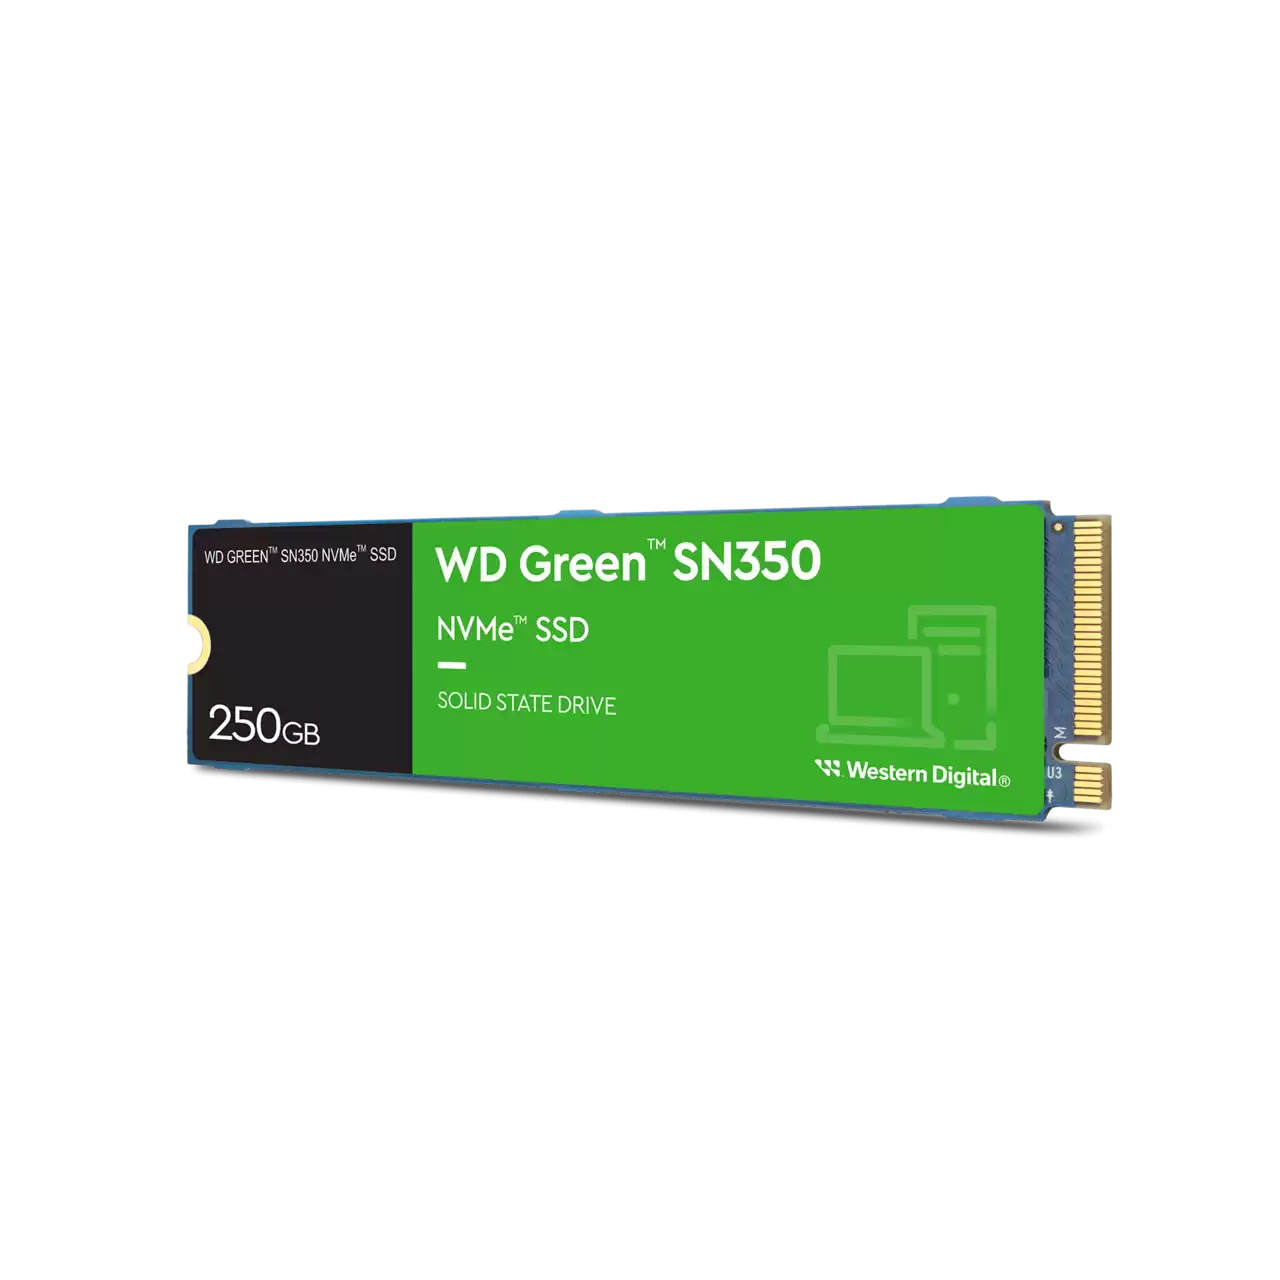 wd-green-sn350-nvme-ssd-250gb